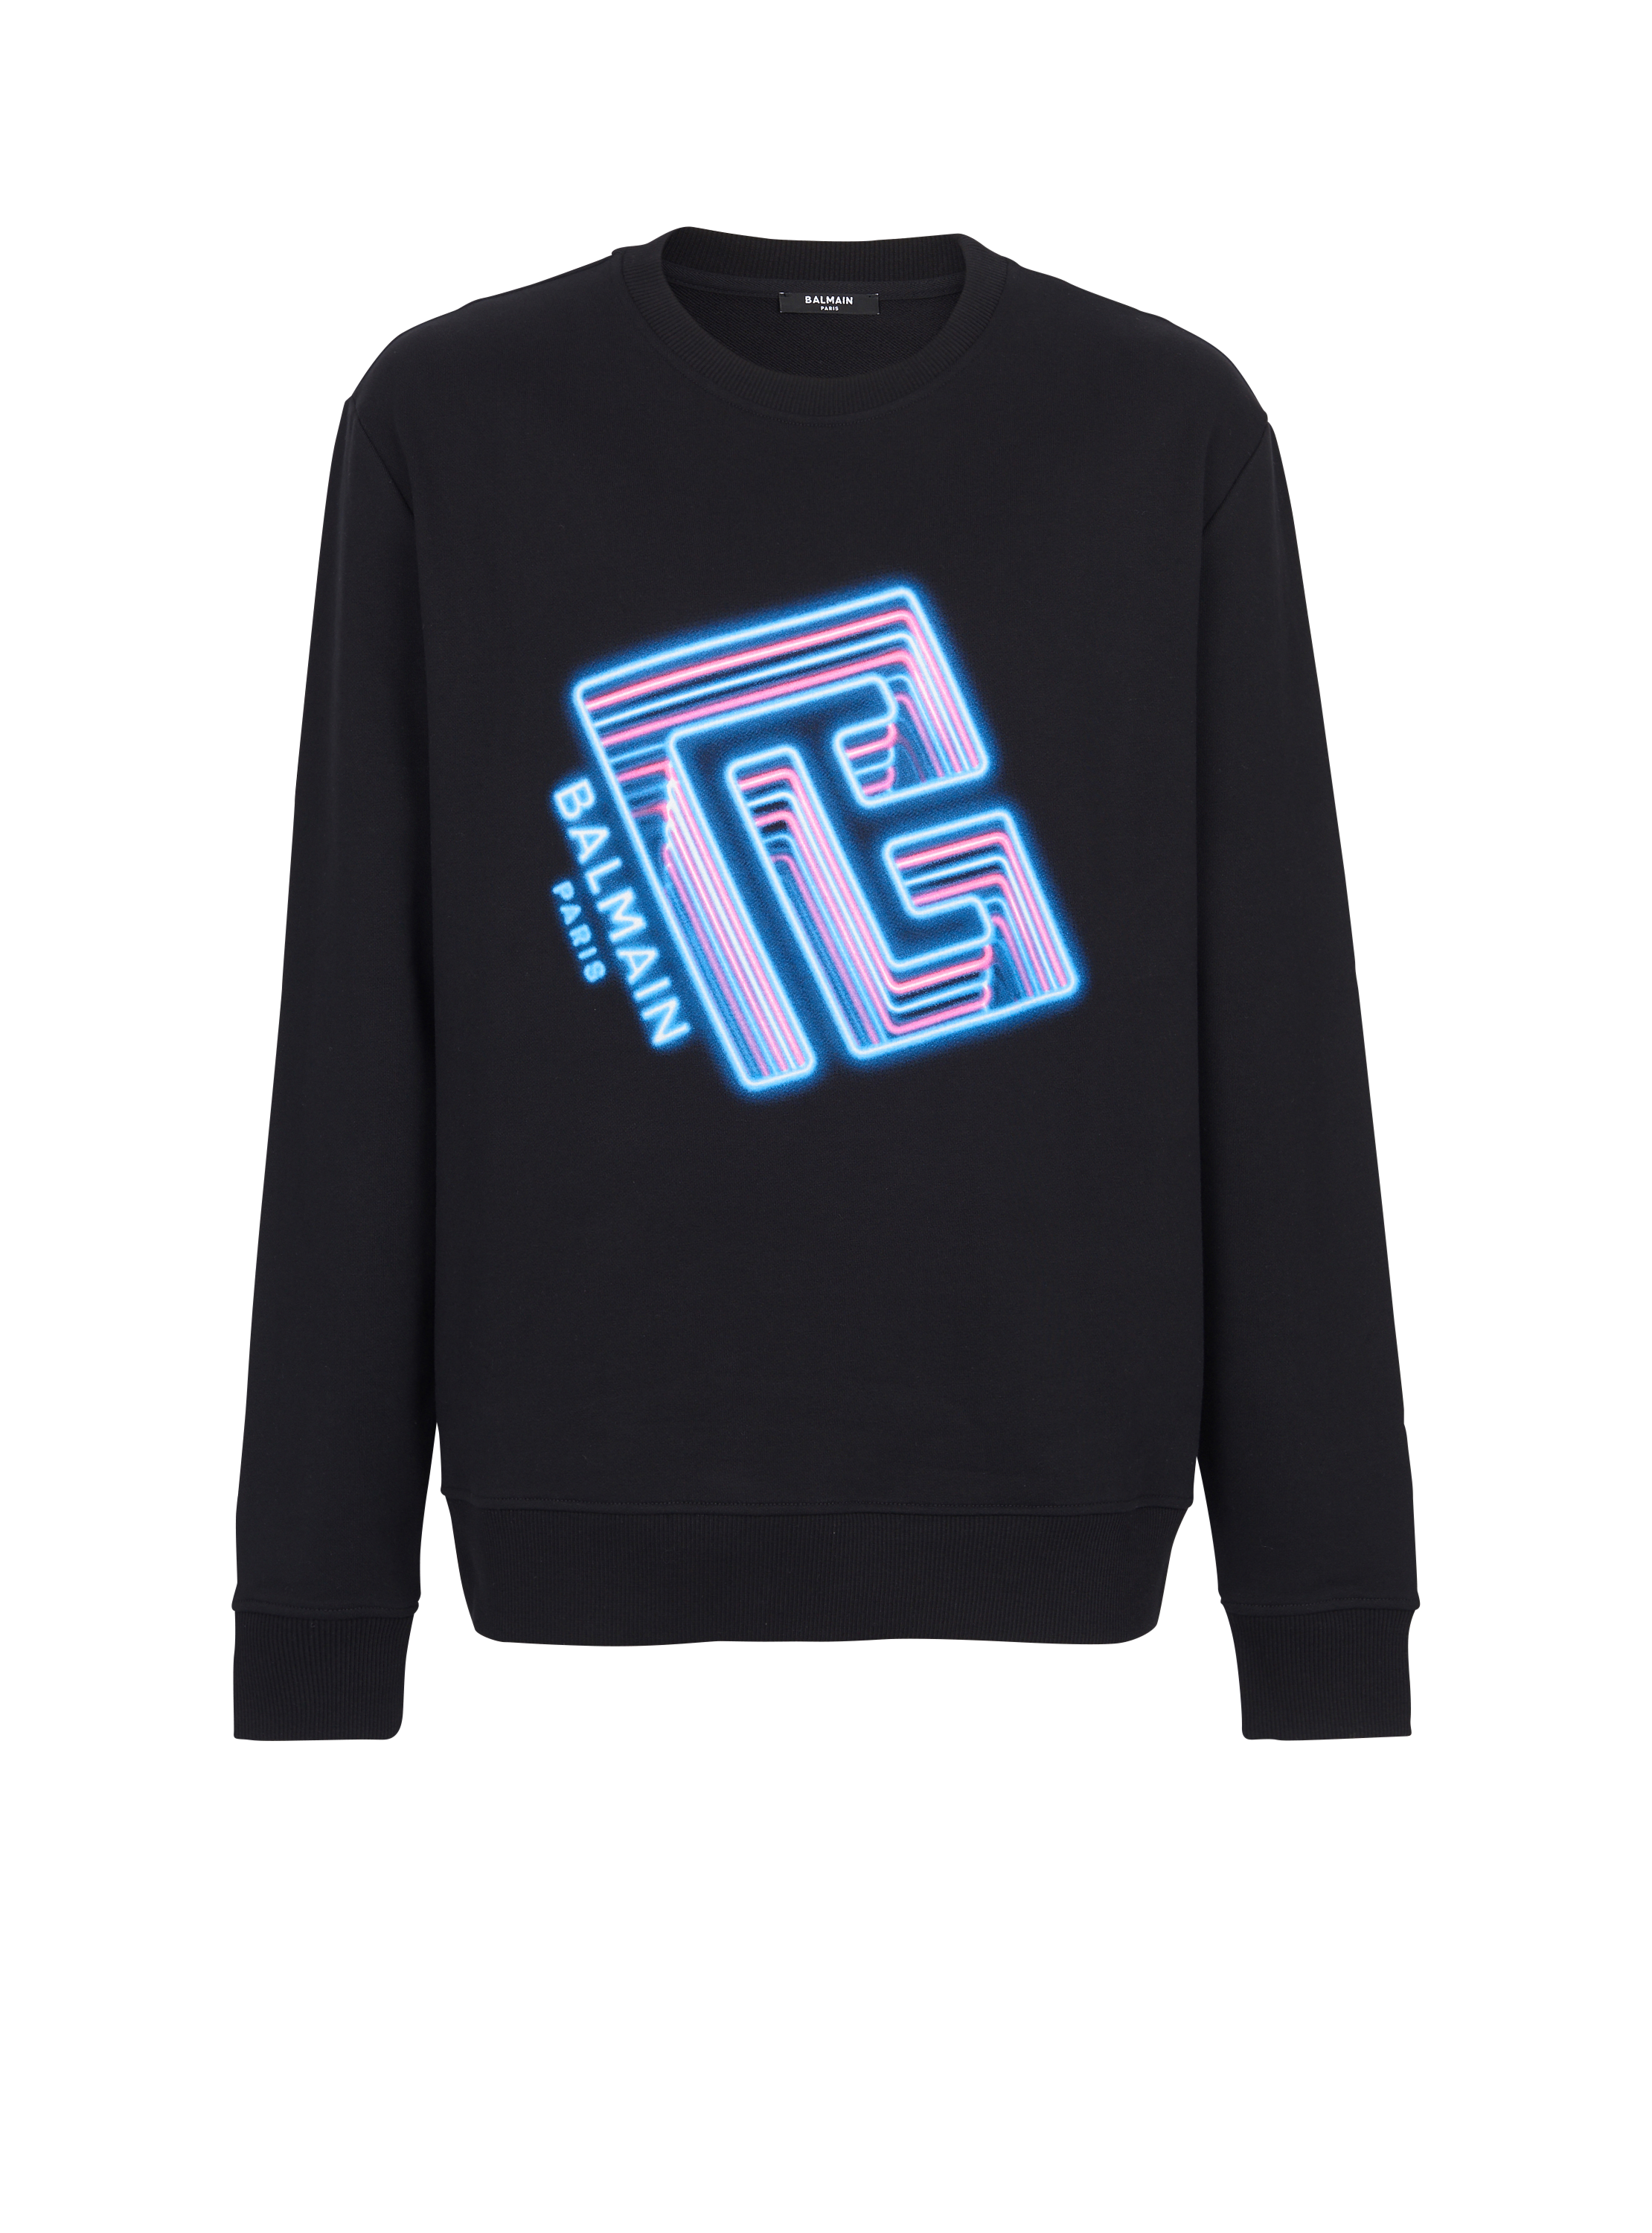 Sweatshirt with Neon logo print